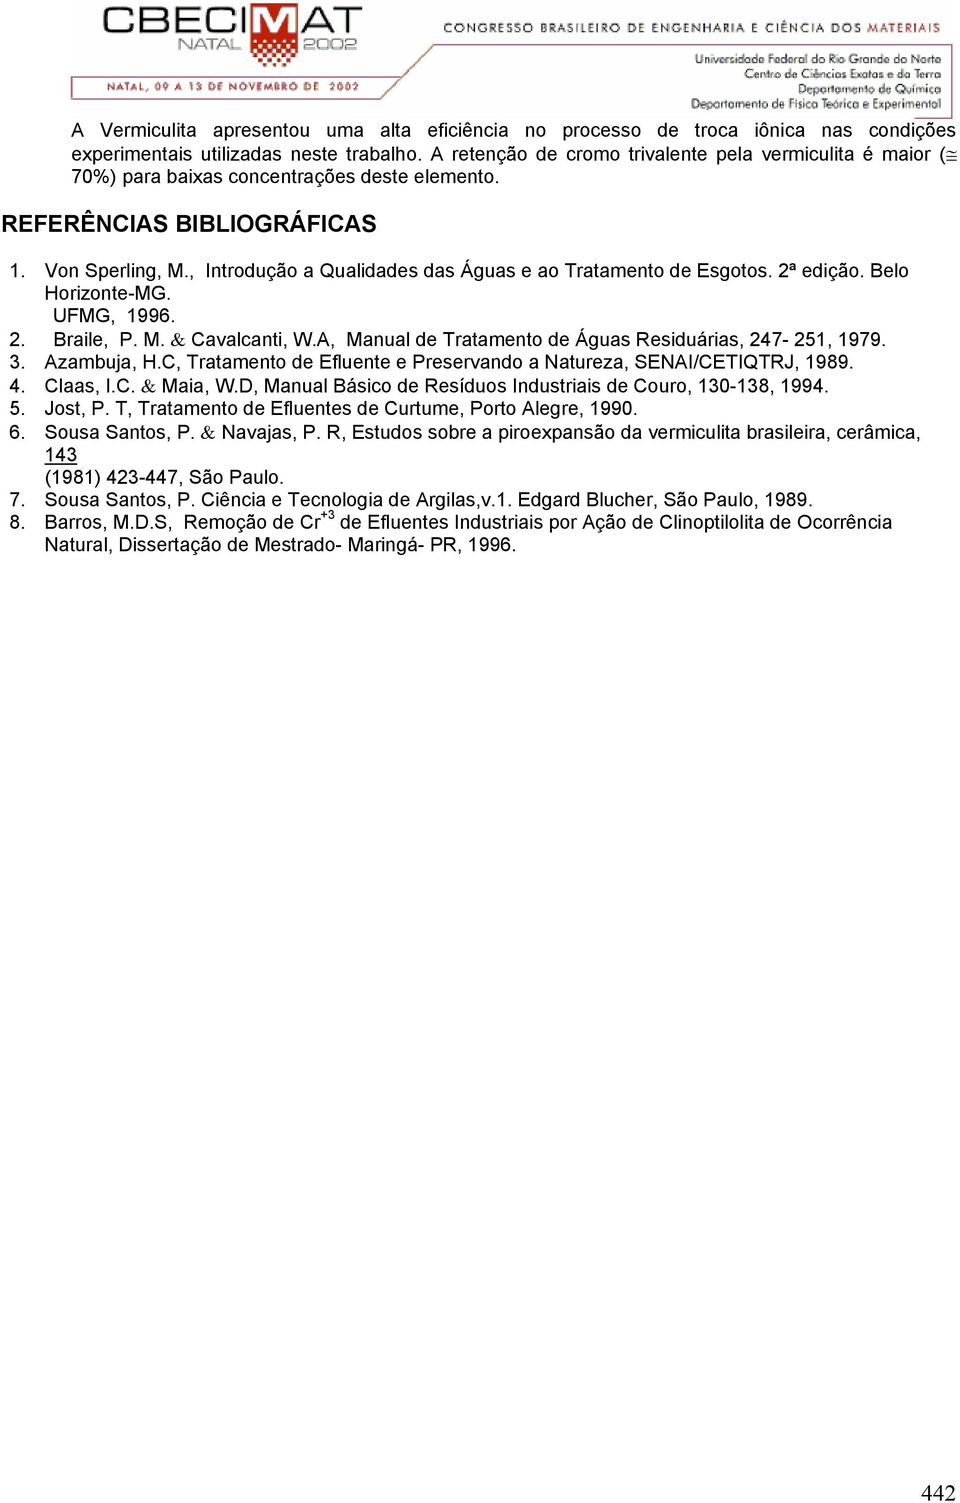 , Introdução a Qualidades das Águas e ao Tratamento de Esgotos. 2ª edição. Belo Horizonte-MG. UFMG, 1996. 2. Braile, P. M. & Cavalcanti, W.A, Manual de Tratamento de Águas Residuárias, 247-251, 1979.